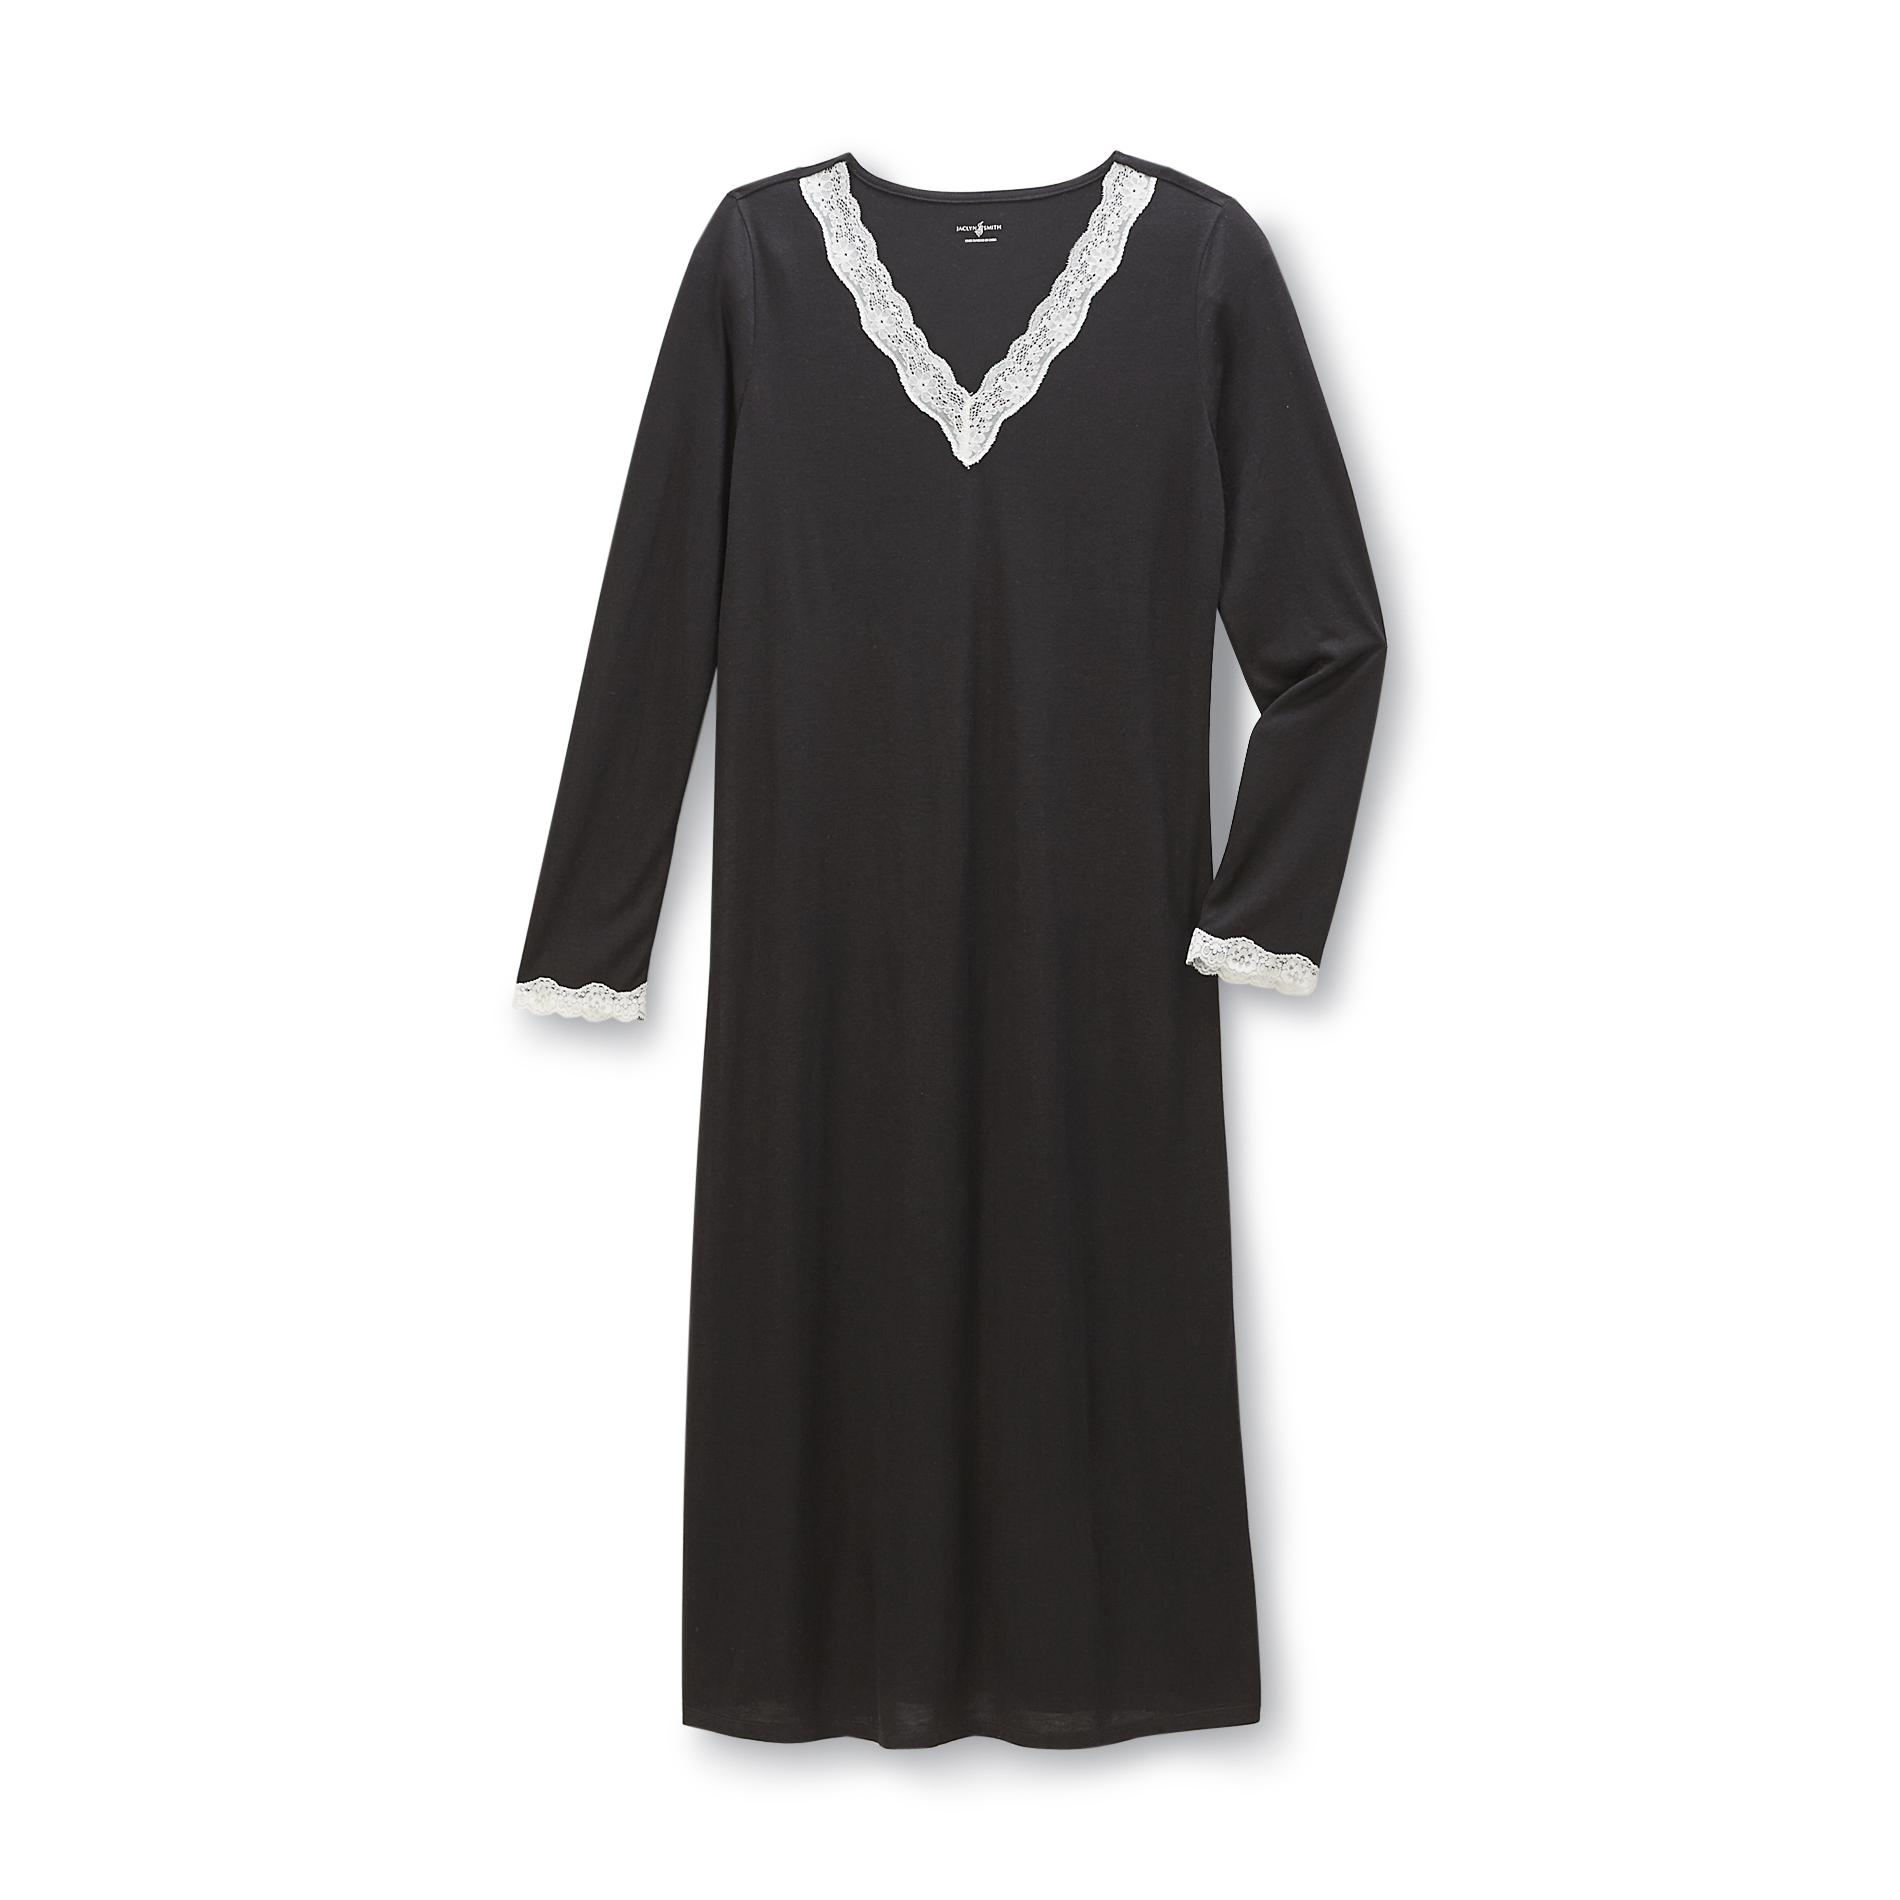 Jaclyn Smith Women's Long-Sleeve Nightgown